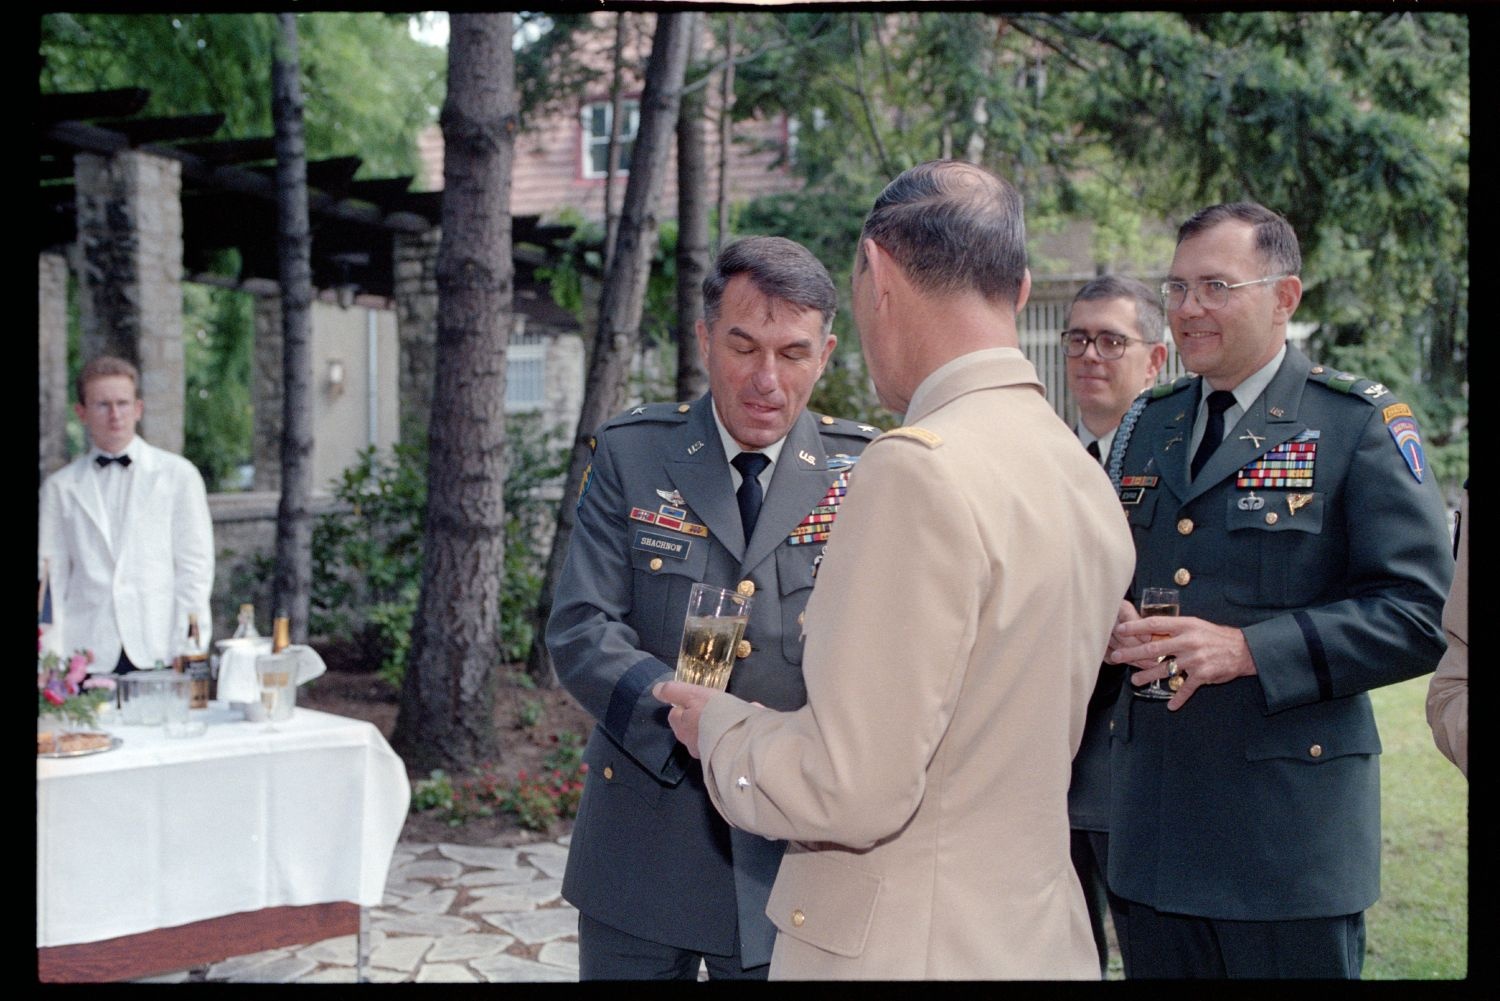 Fotografie: Besuch von Brigadier General Sidney Shachnow im Quartier Napoléon in Berlin-Reinickendorf (AlliiertenMuseum/U.S. Army Photograph Public Domain Mark)